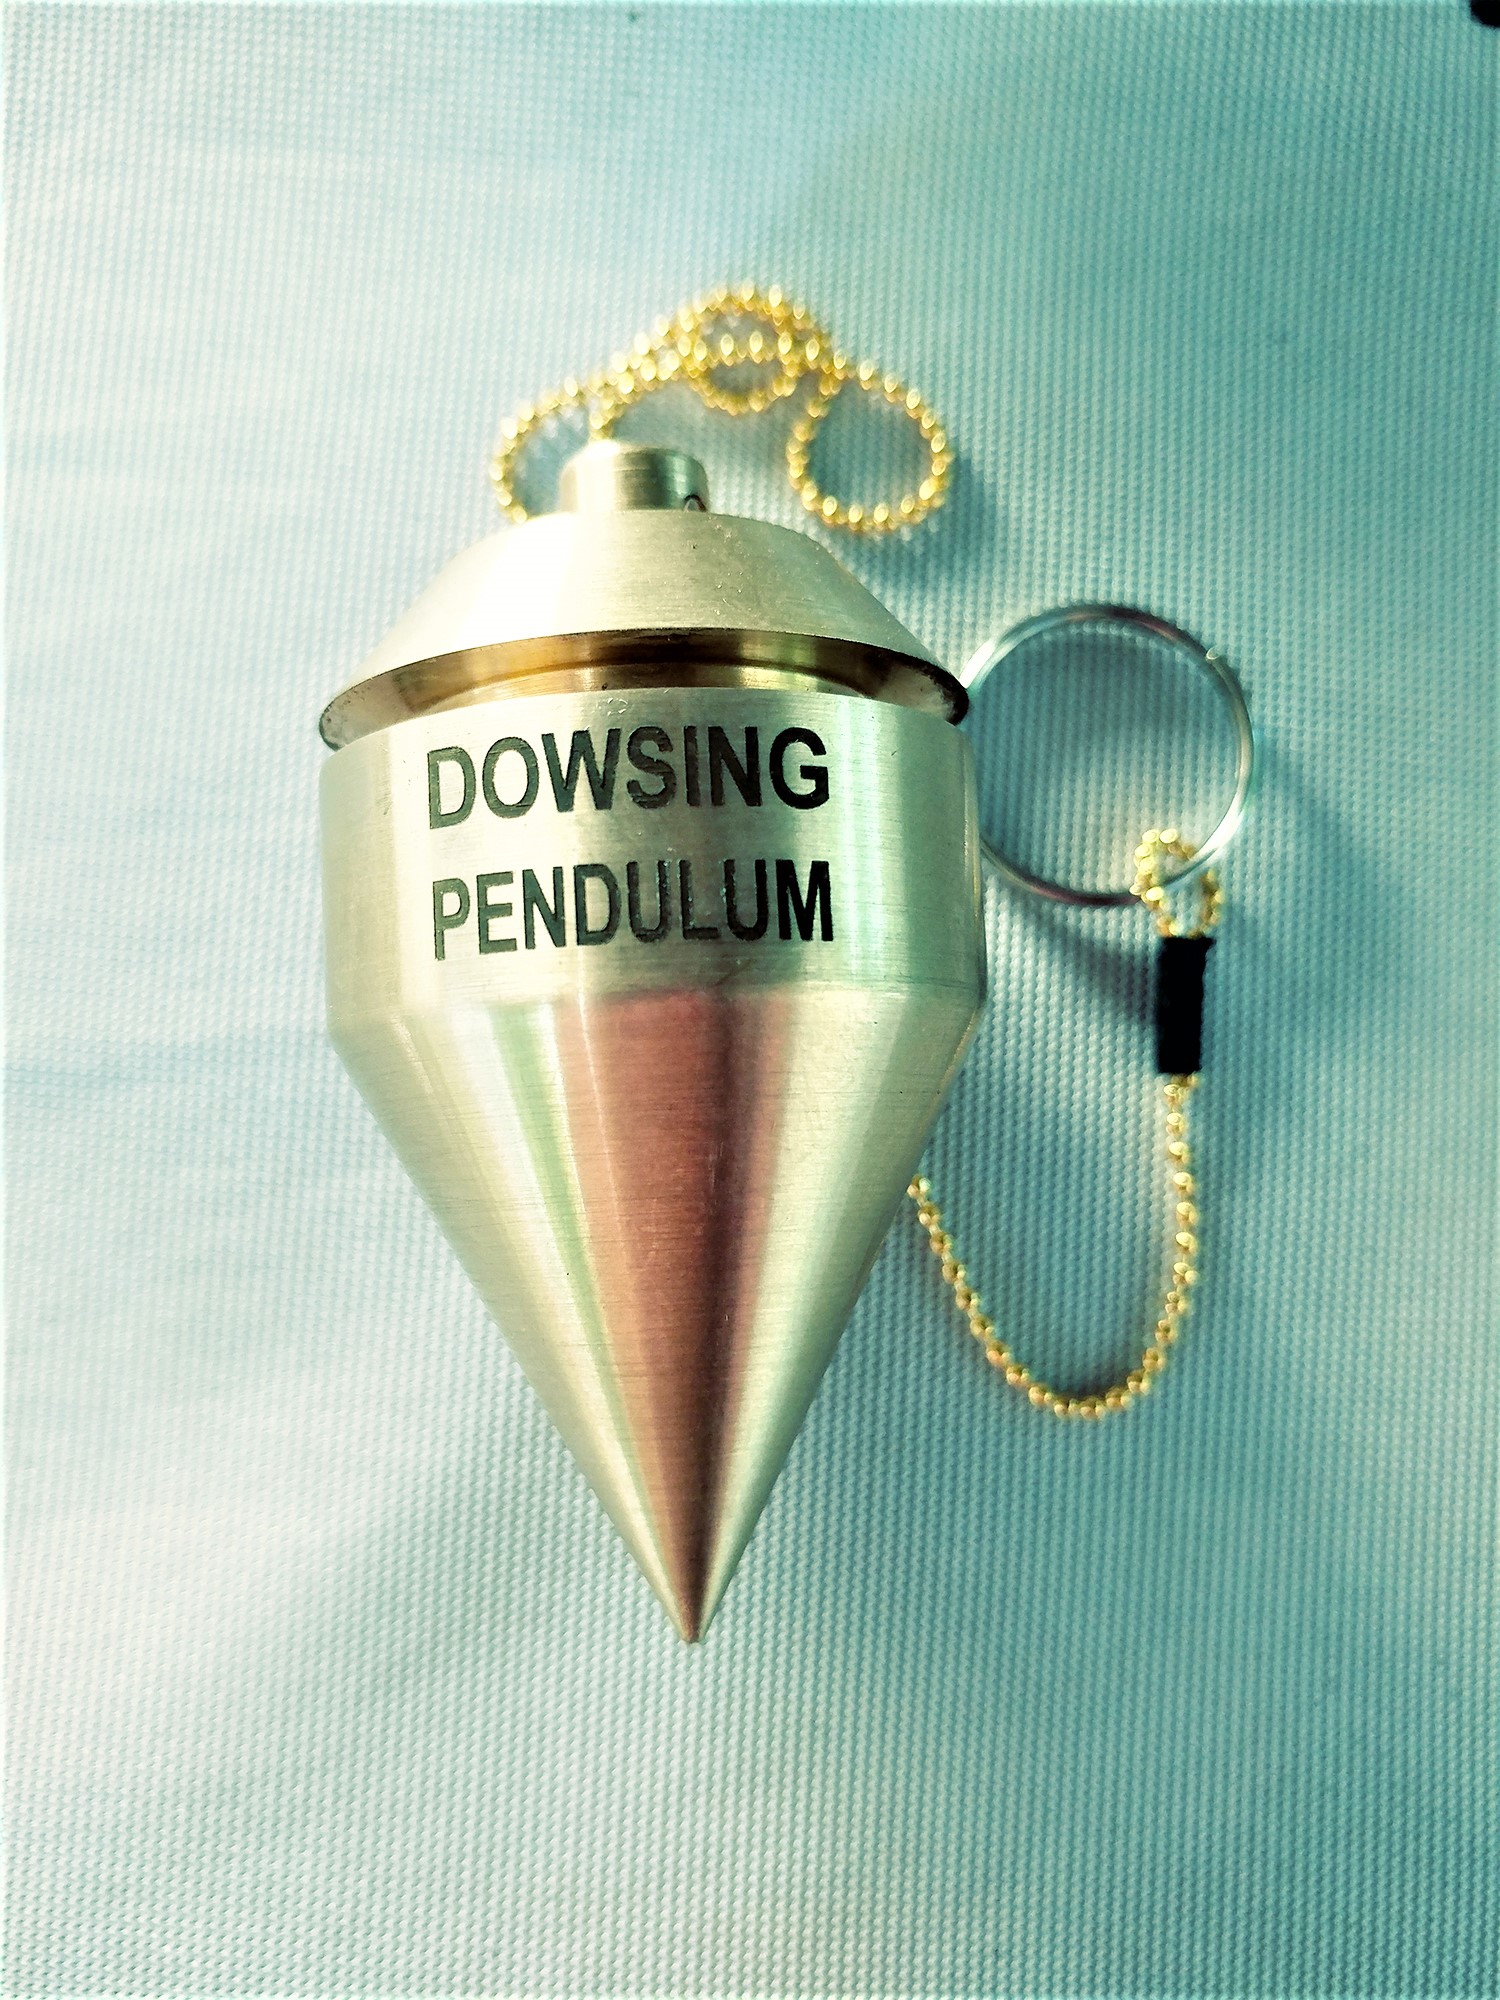 Hazneli Sarkaç altın arama, alan tarama. dowsing pendulum